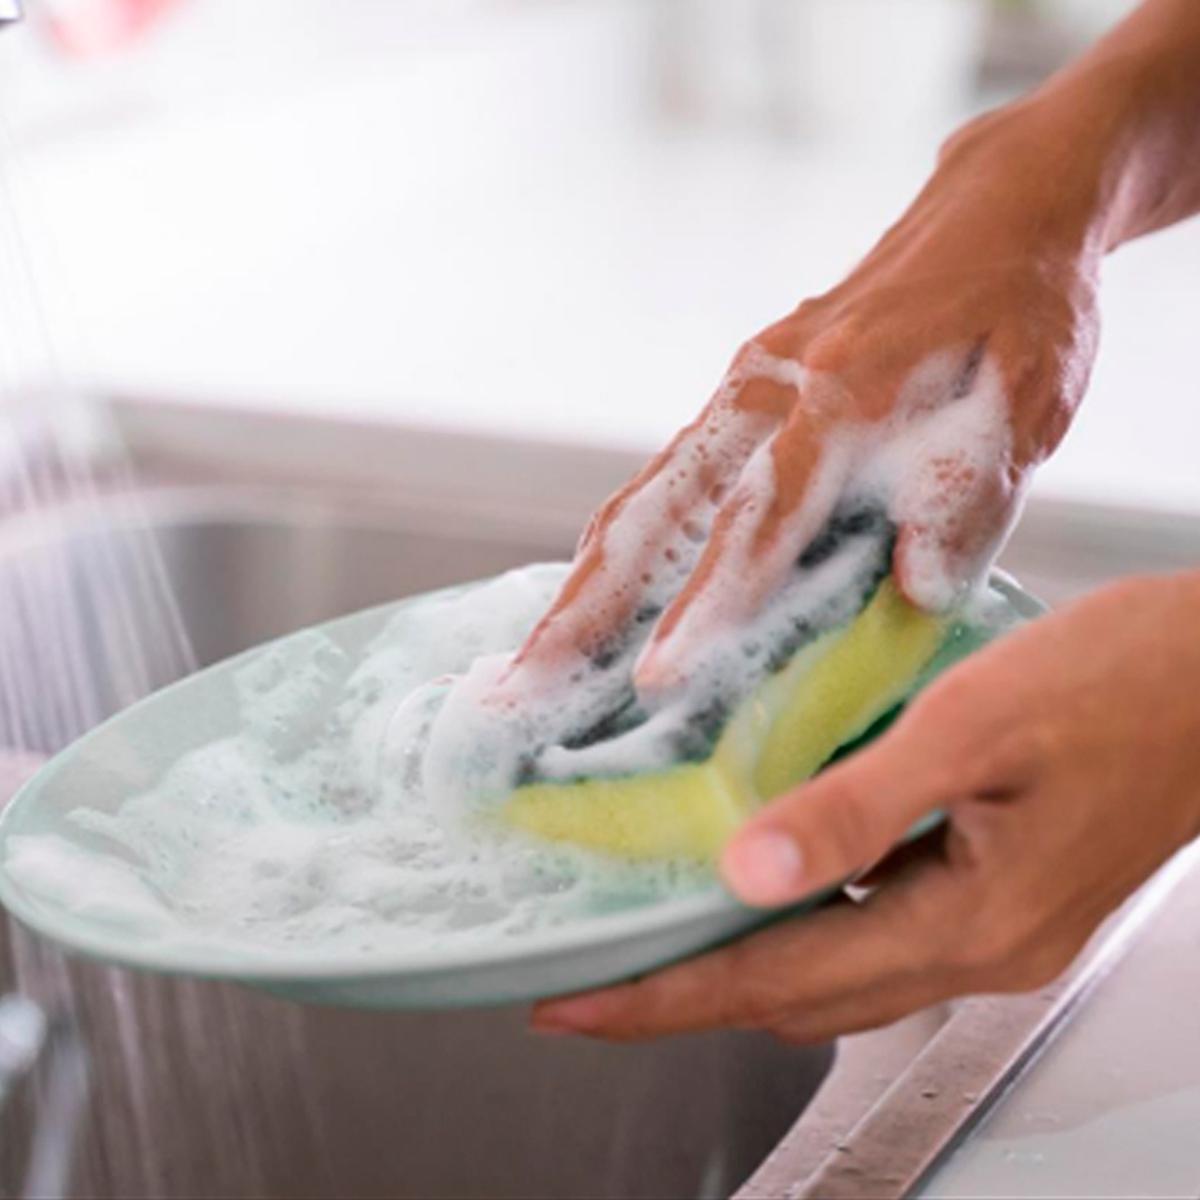 Cosas que jamás deberías limpiar con jabón lavavajillas